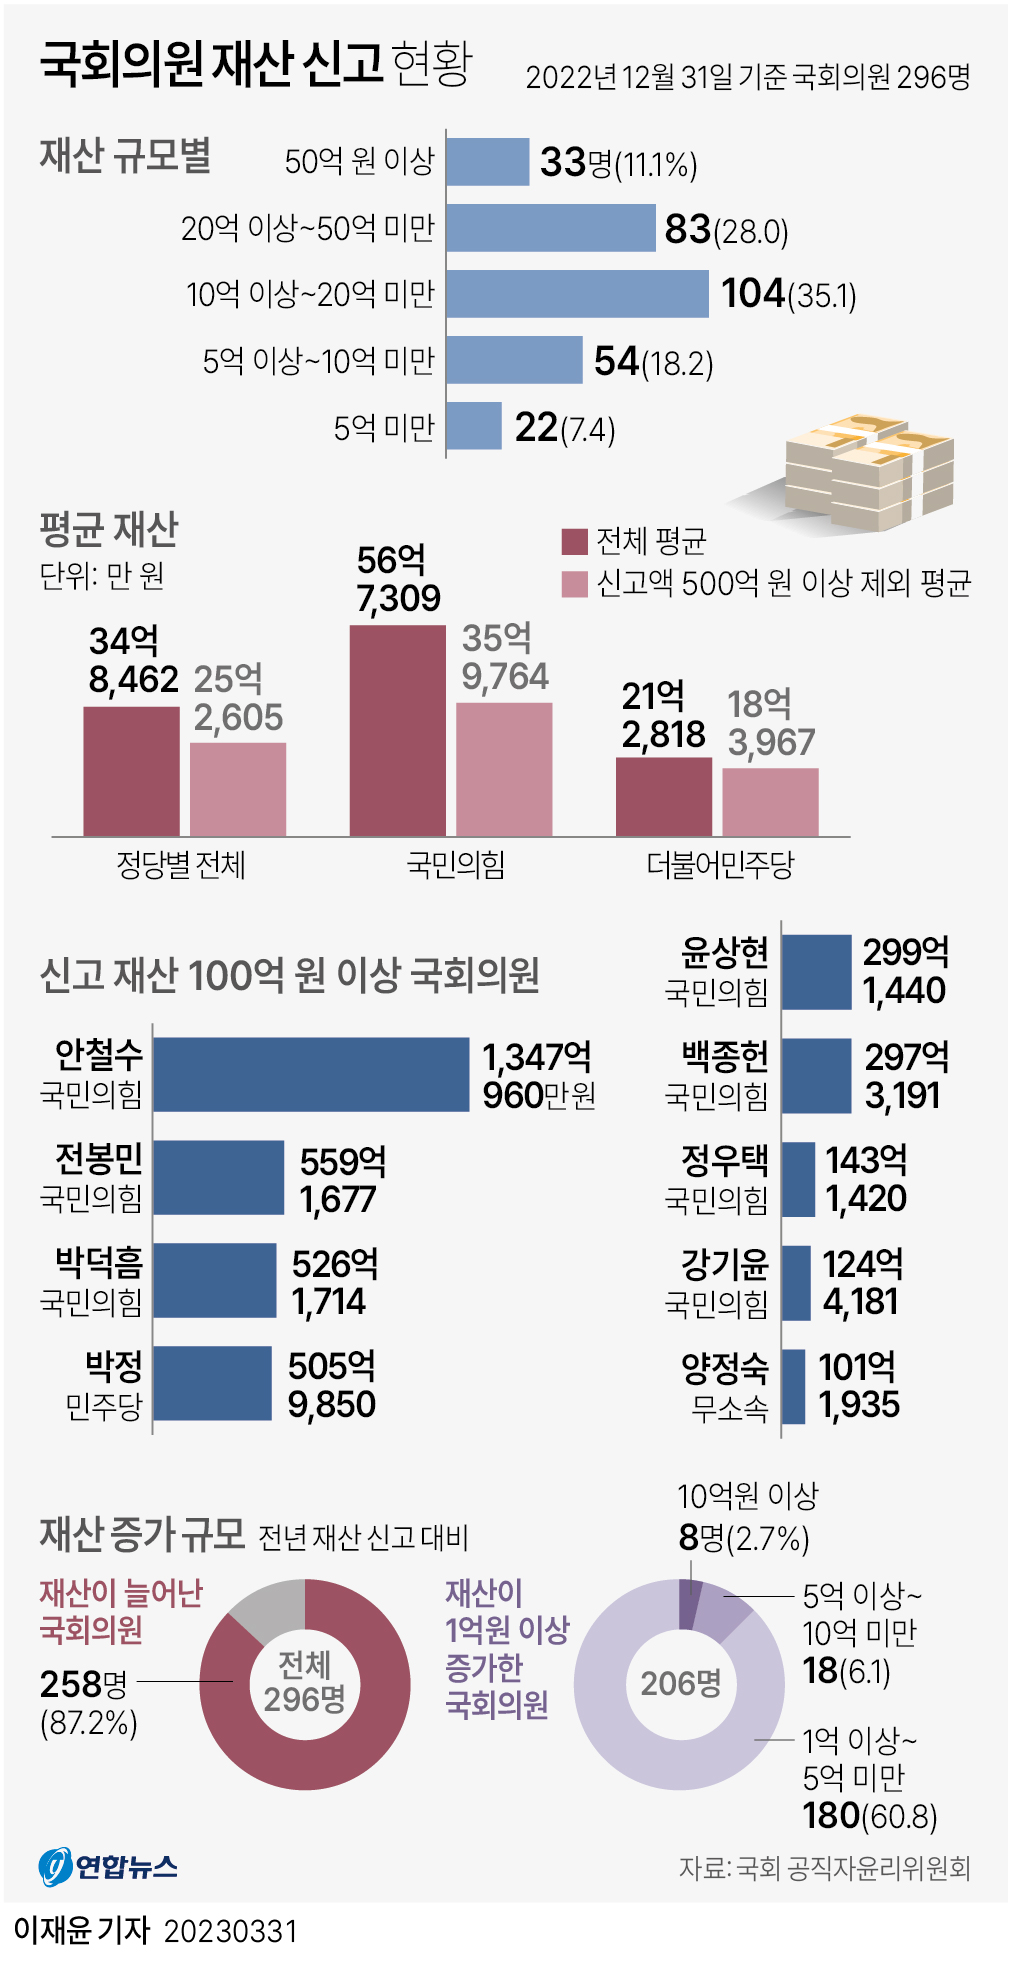 [그래픽] 국회의원 재산 신고 현황